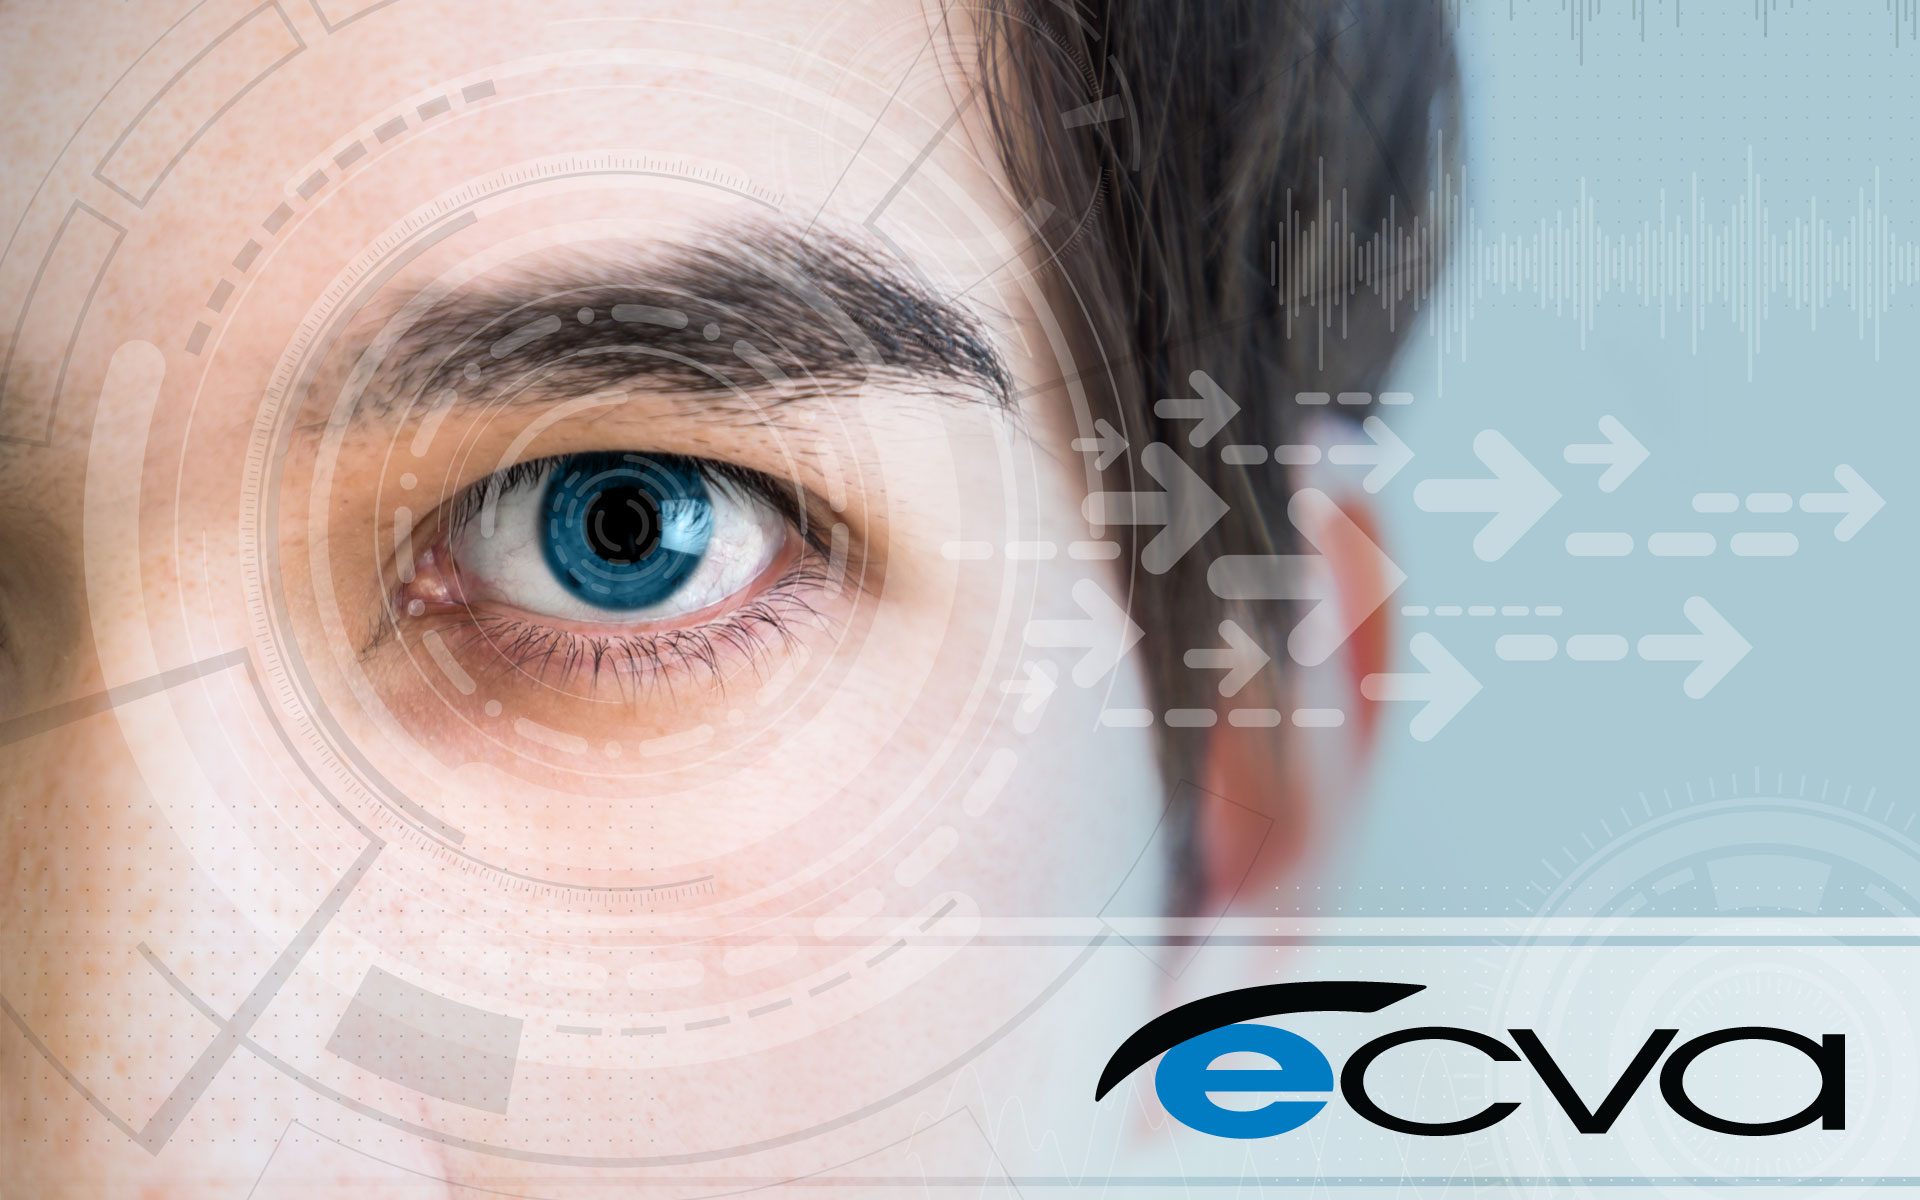 Have a comprehensive eye exam at ECVA today!